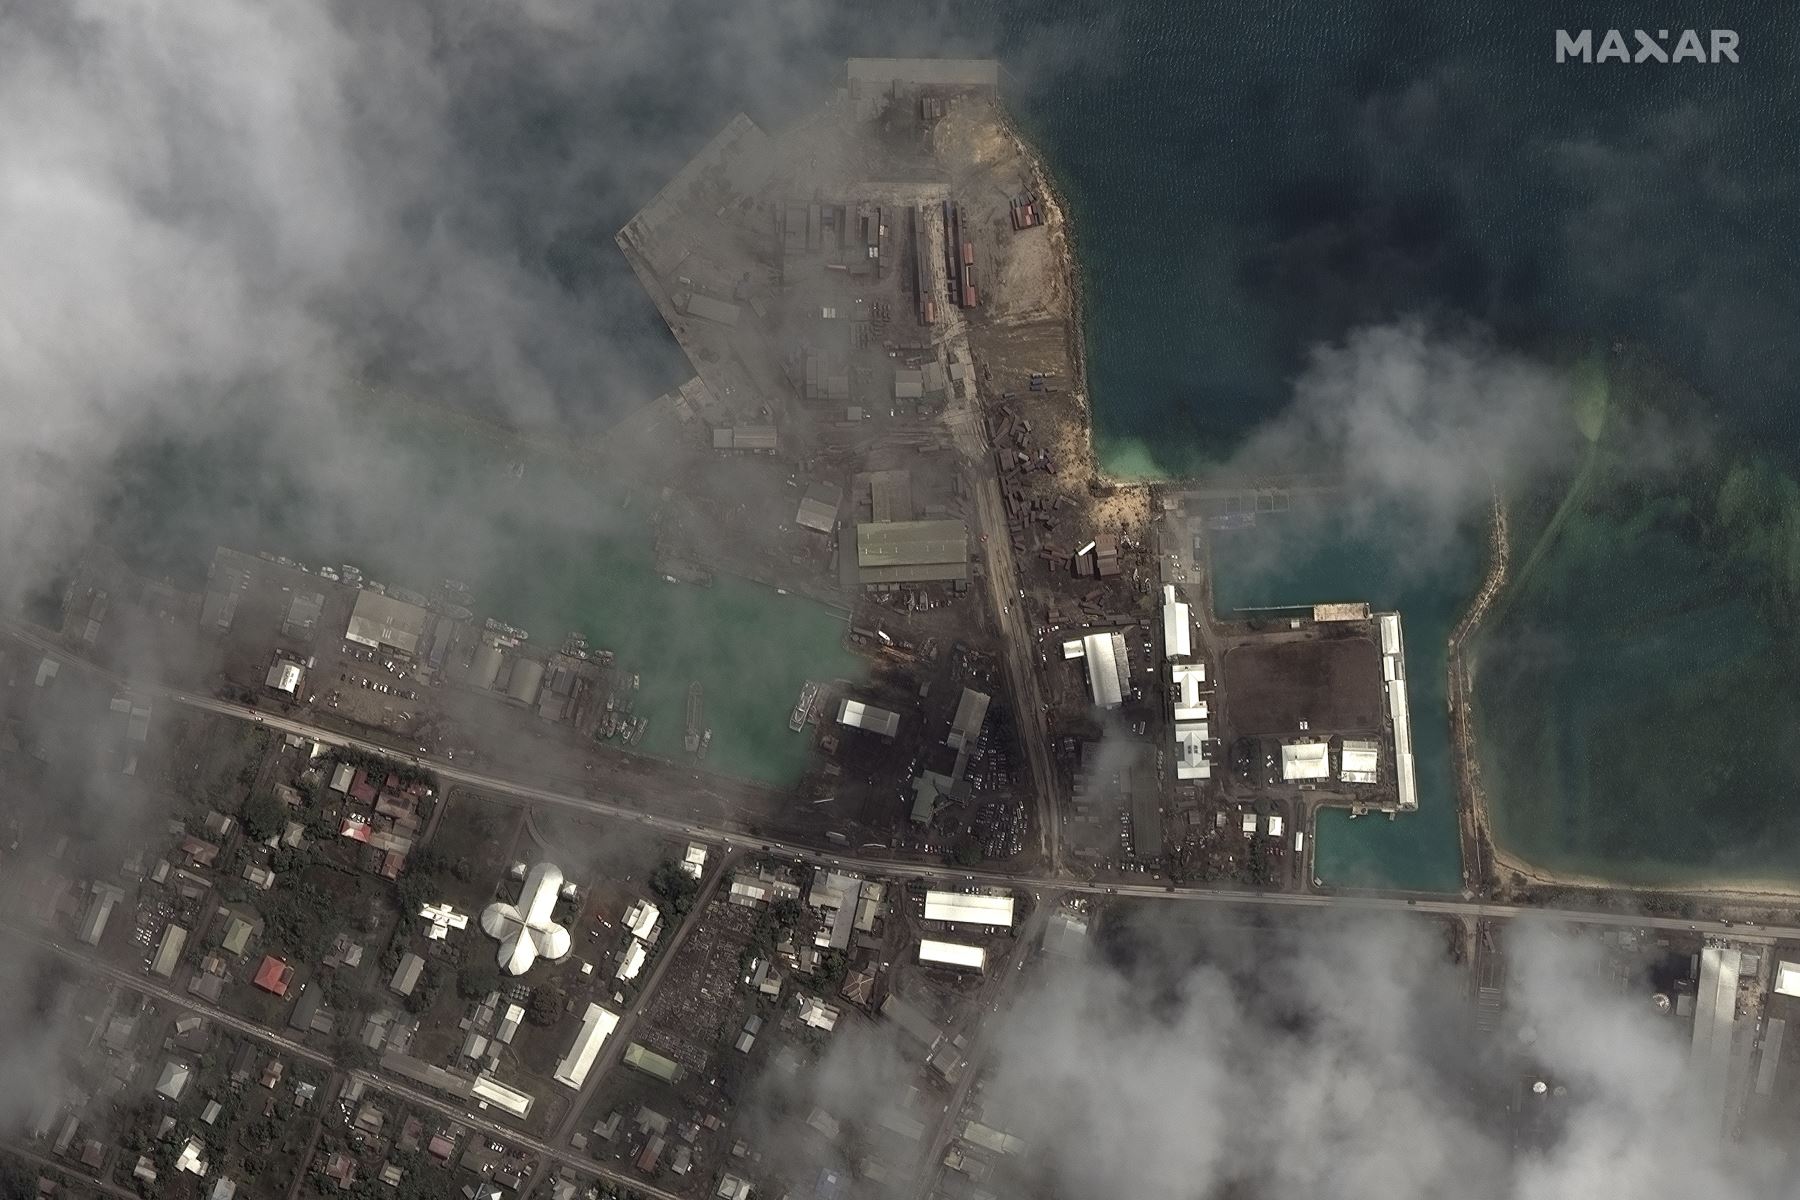 Una imagen satelital entregada por Maxar Technologies muestra las principales instalaciones portuarias después de la erupción y el tsunami, en Nuku Alofa, Tonga, el 18 de enero de 2022. Foto: EFE